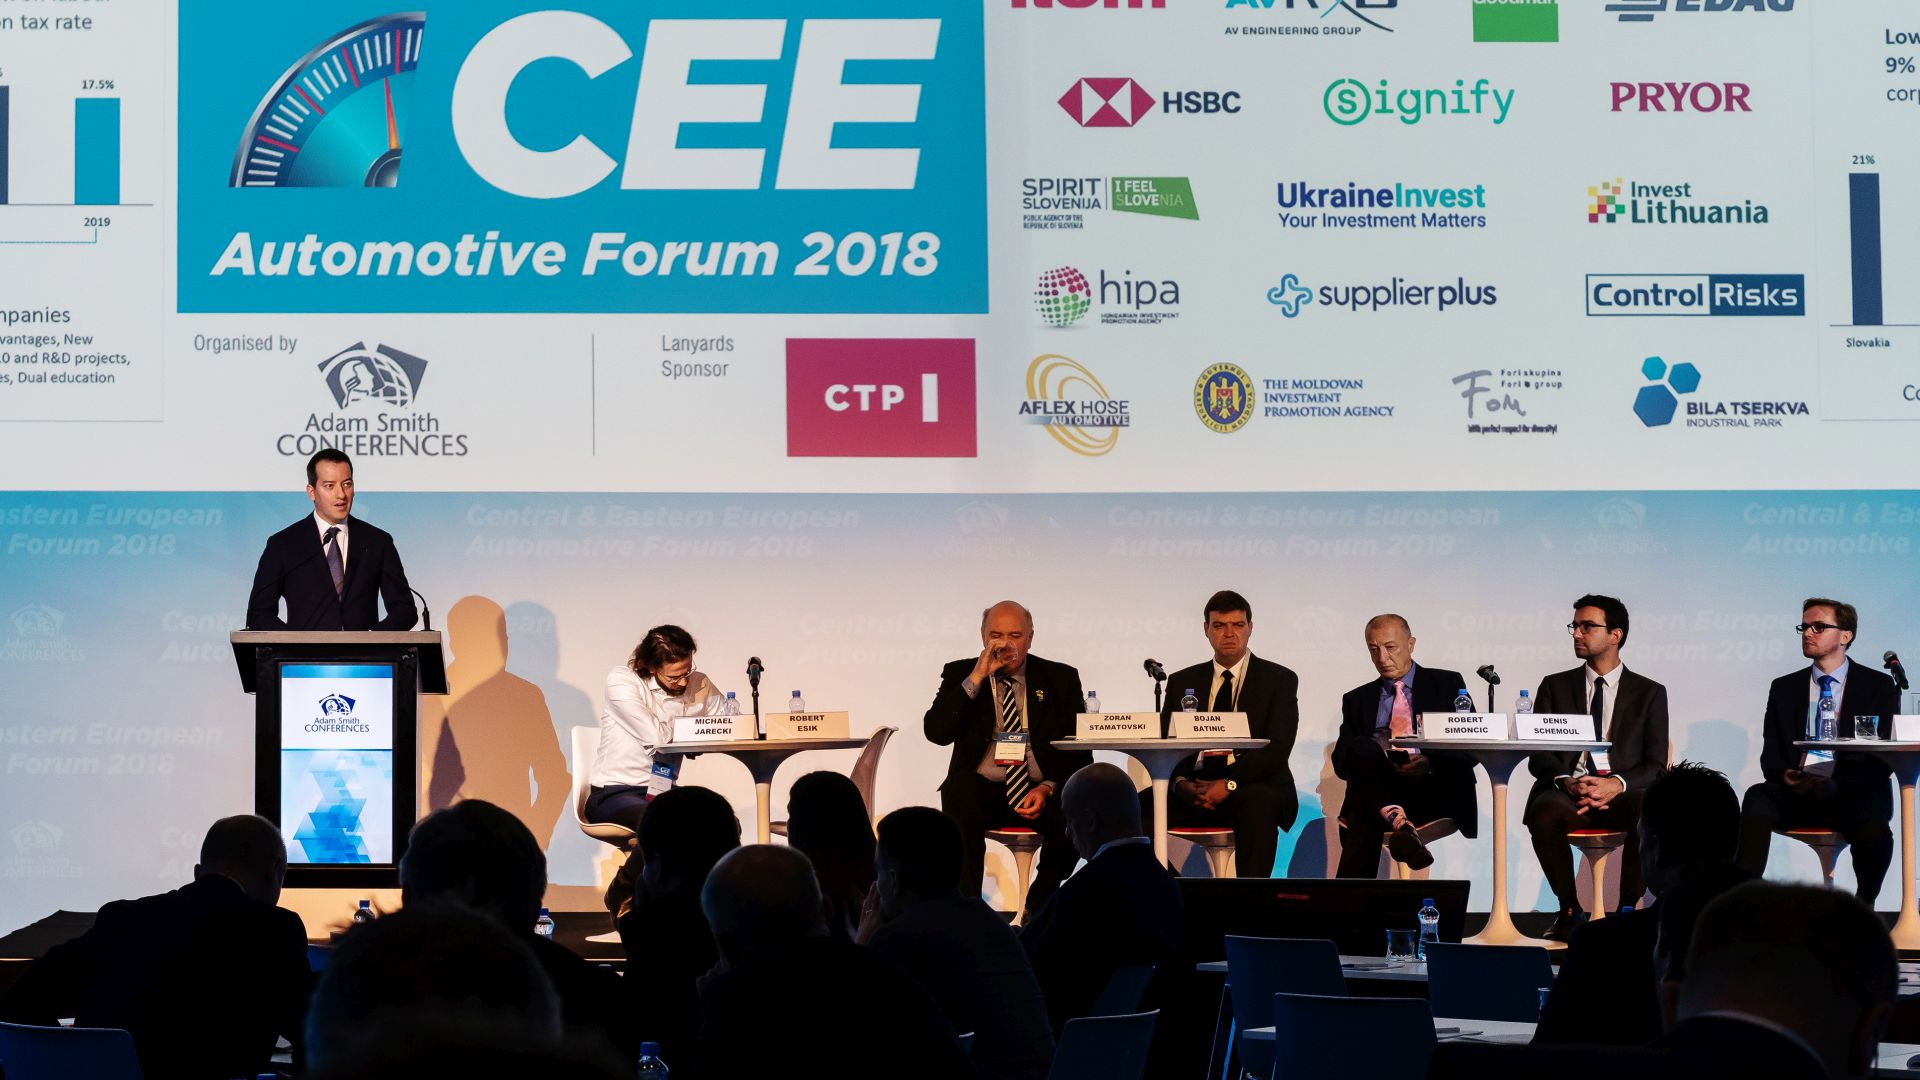 Róbert Ésik at the CEE Automotive Forum 2018